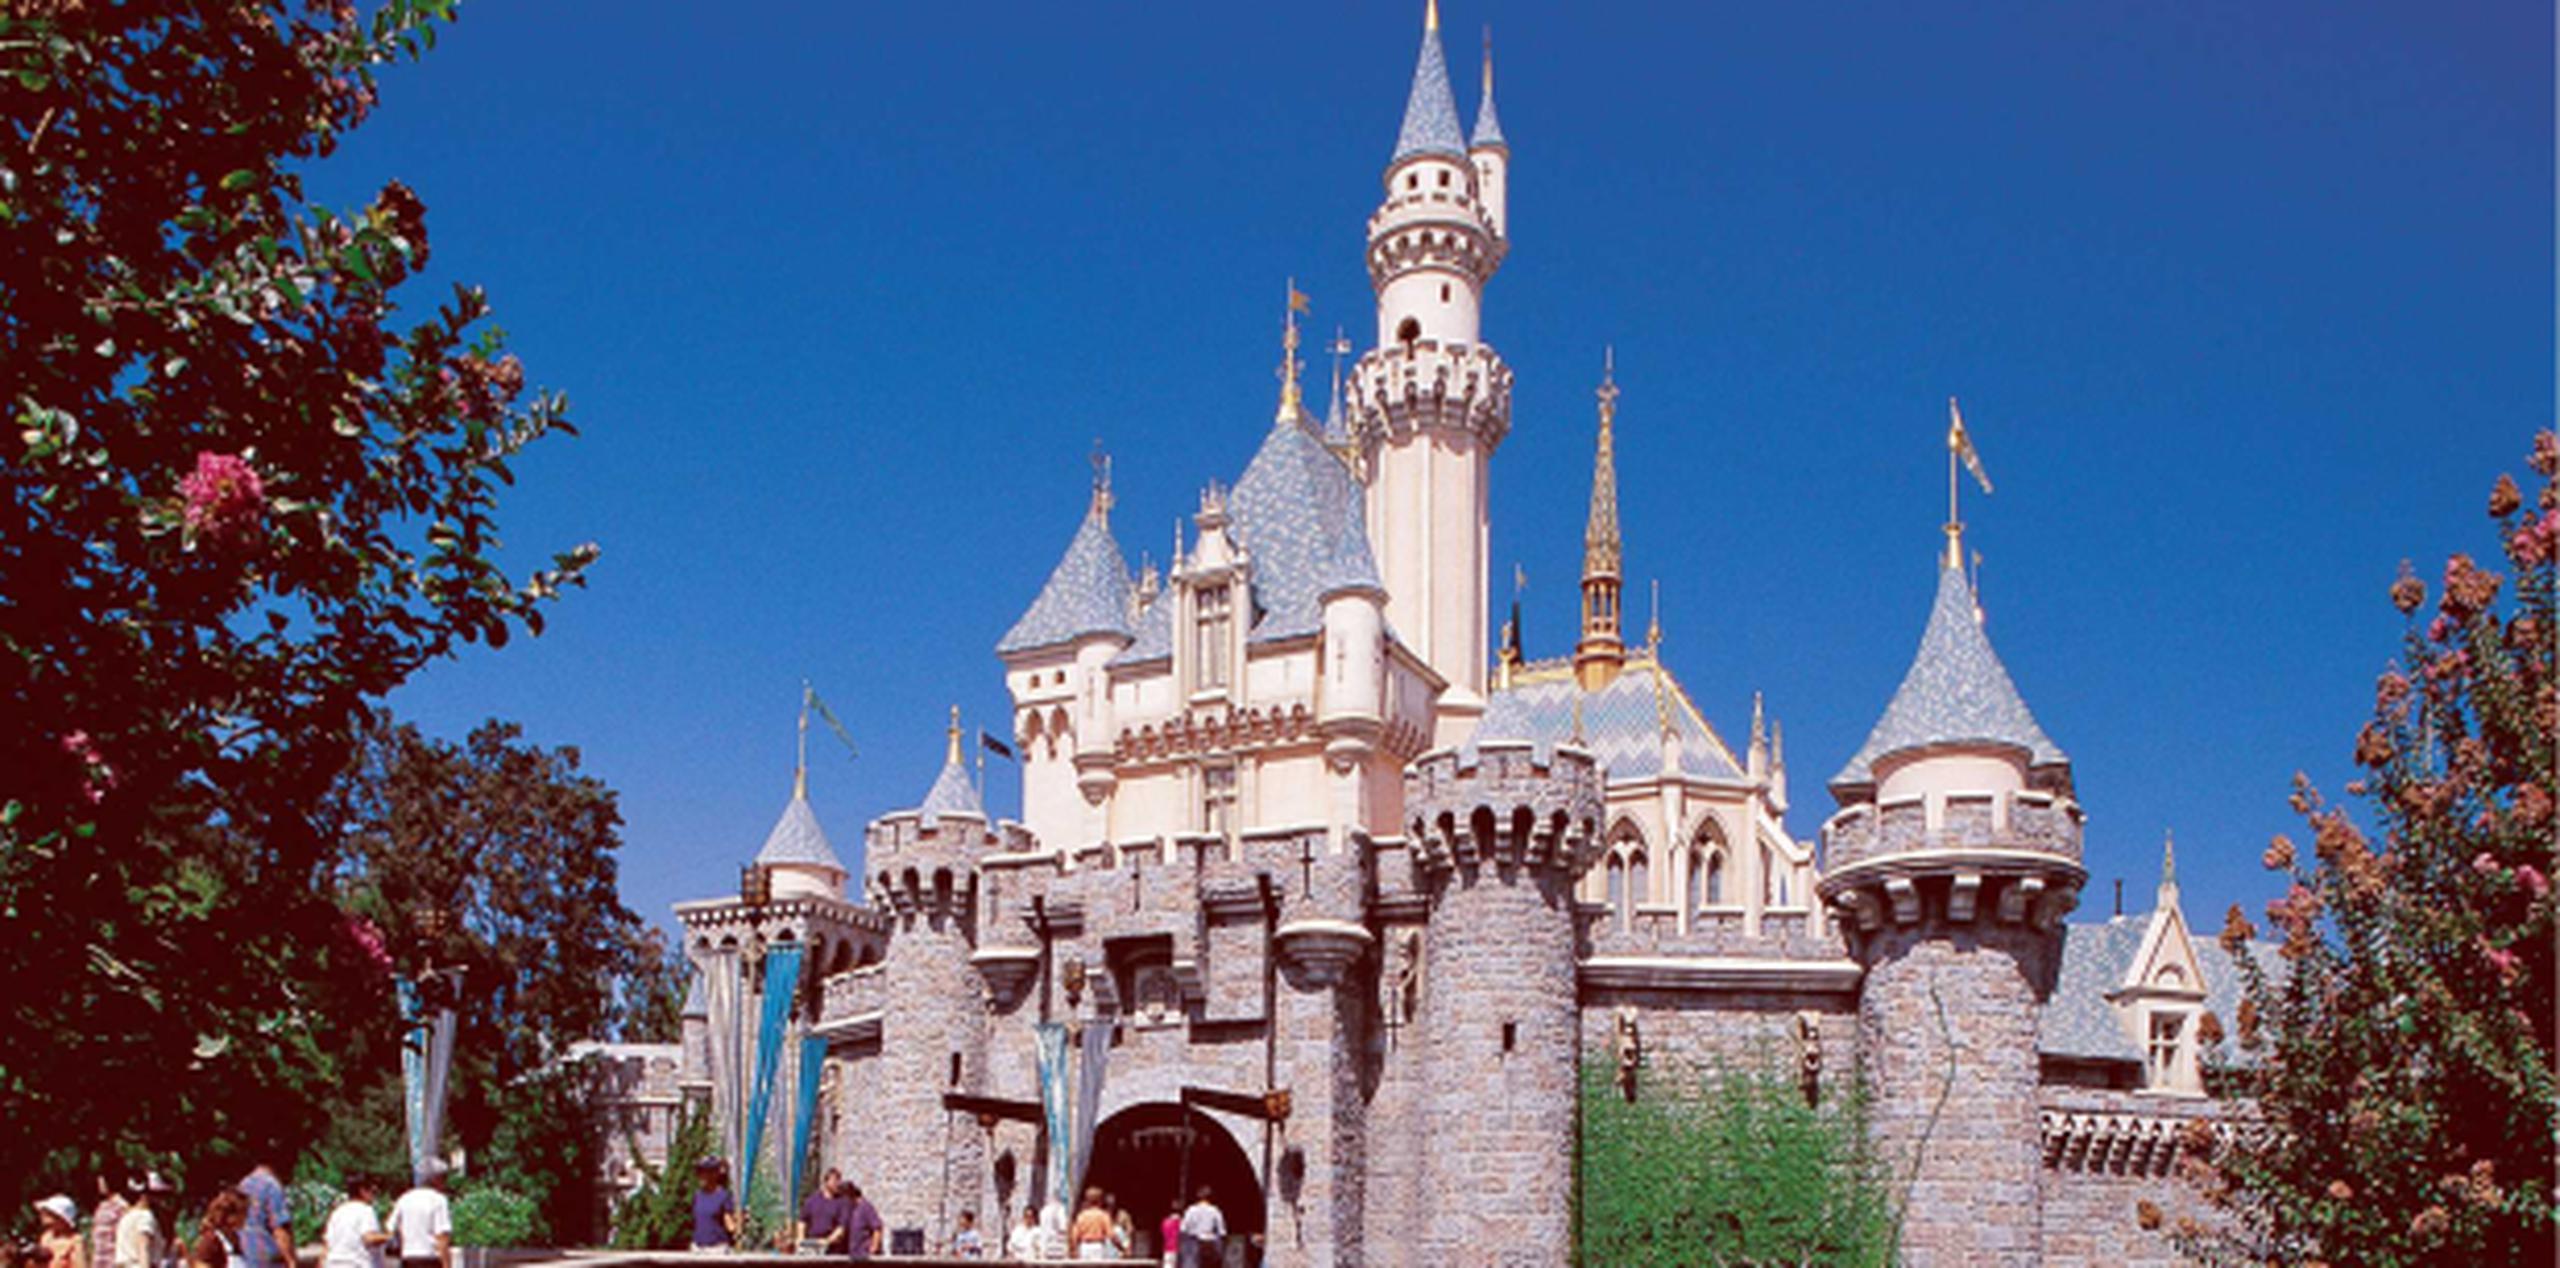 El presidente de resorts y parques de Disney, Bob Chapek, presentó las próximas atracciones para los parques de la cadena, tanto en Estados Unidos como en el extranjero. (Archivo)